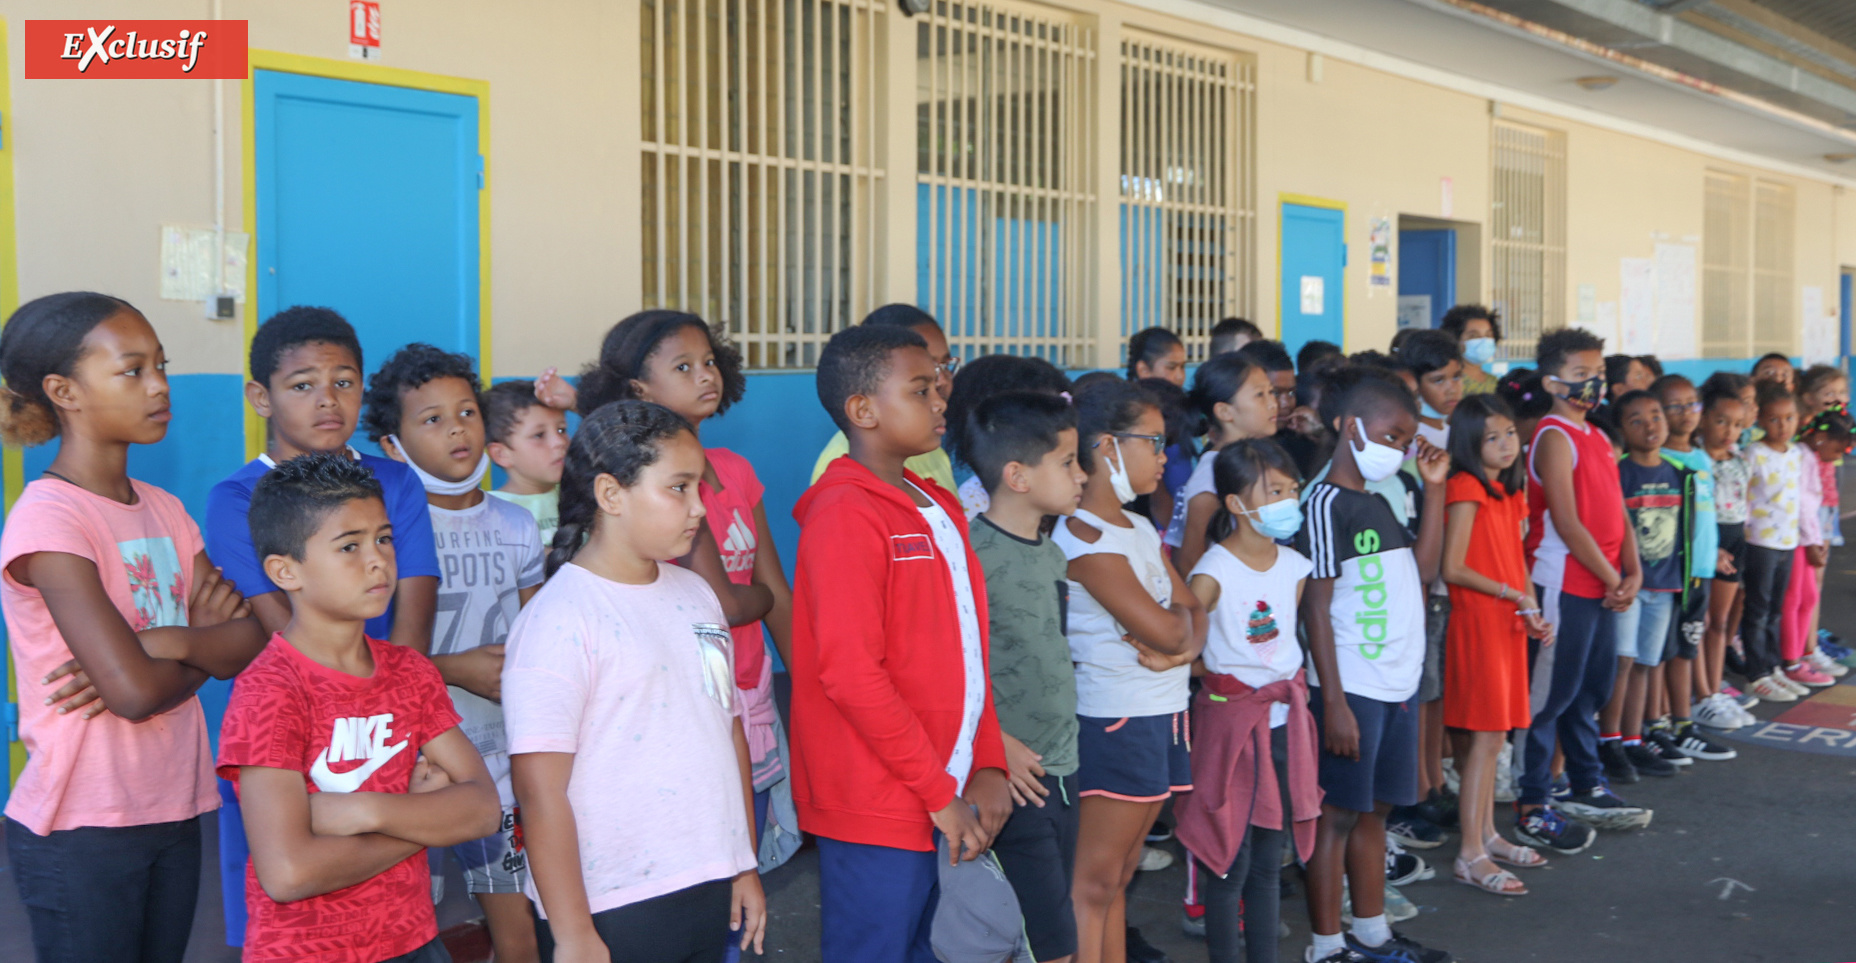 Etaient présents les élèves participant à l’opération «École ouverte» dans le cadre des vacances apprenantes